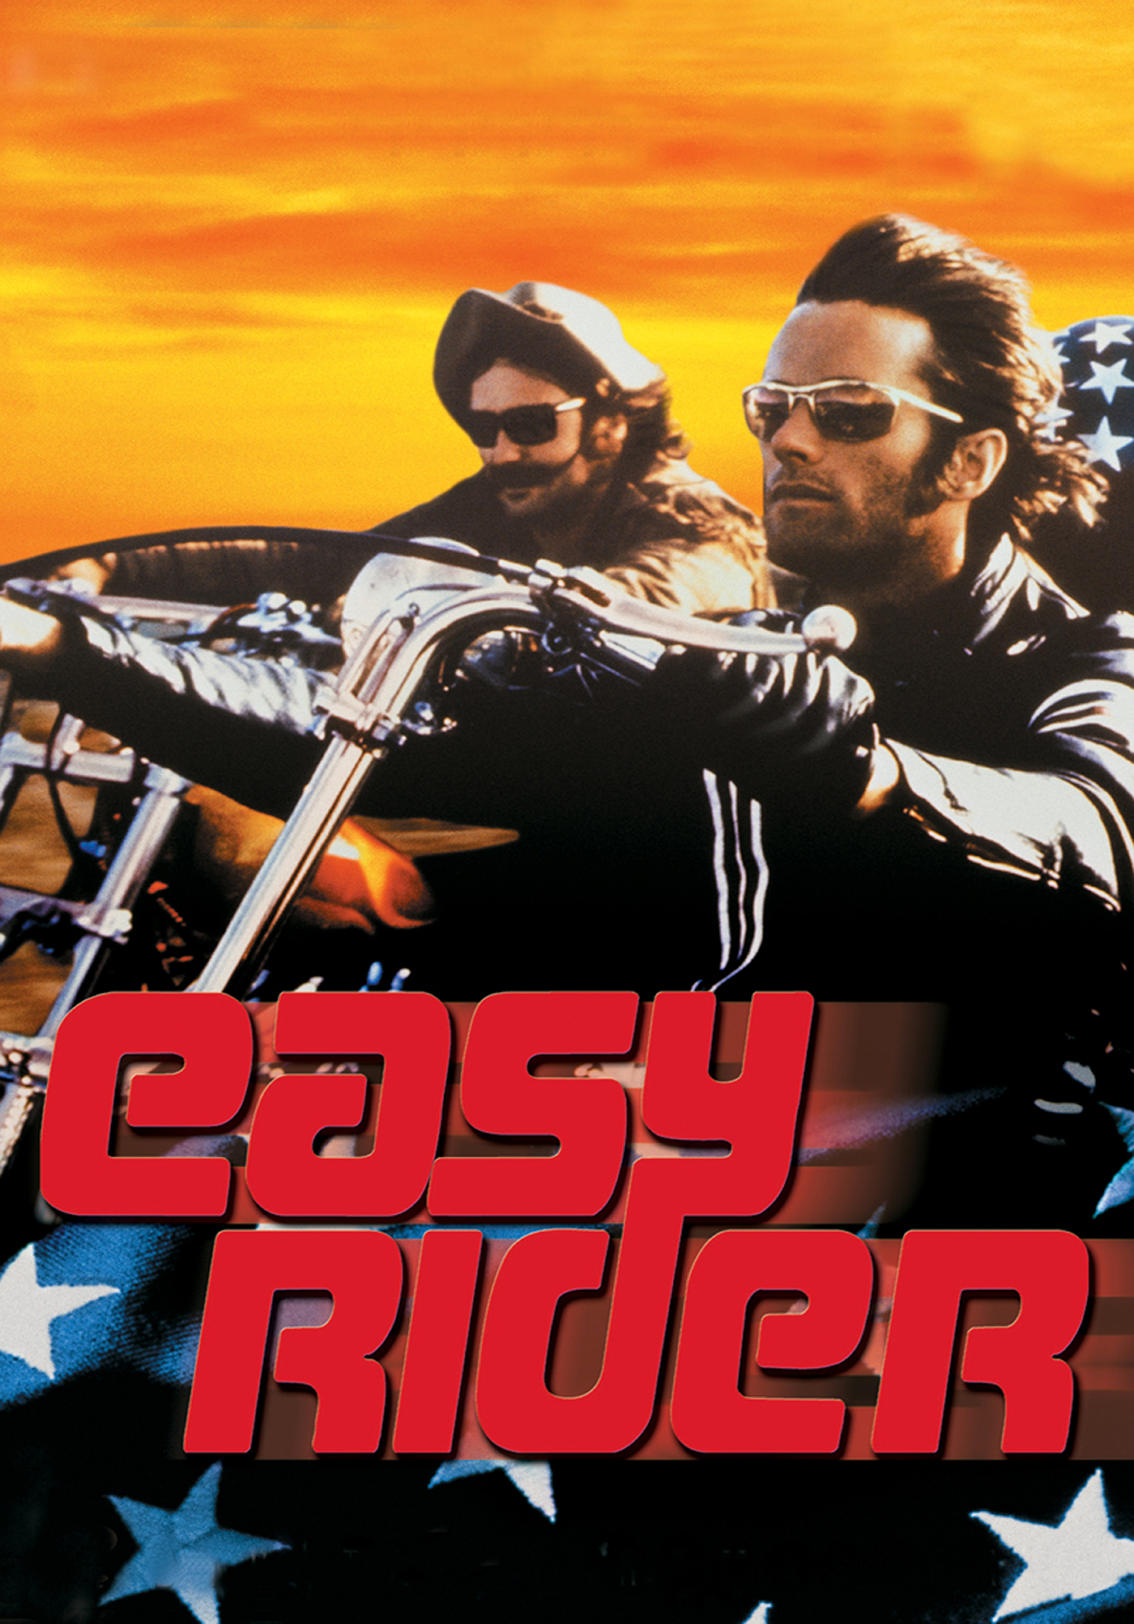 easy rider cast